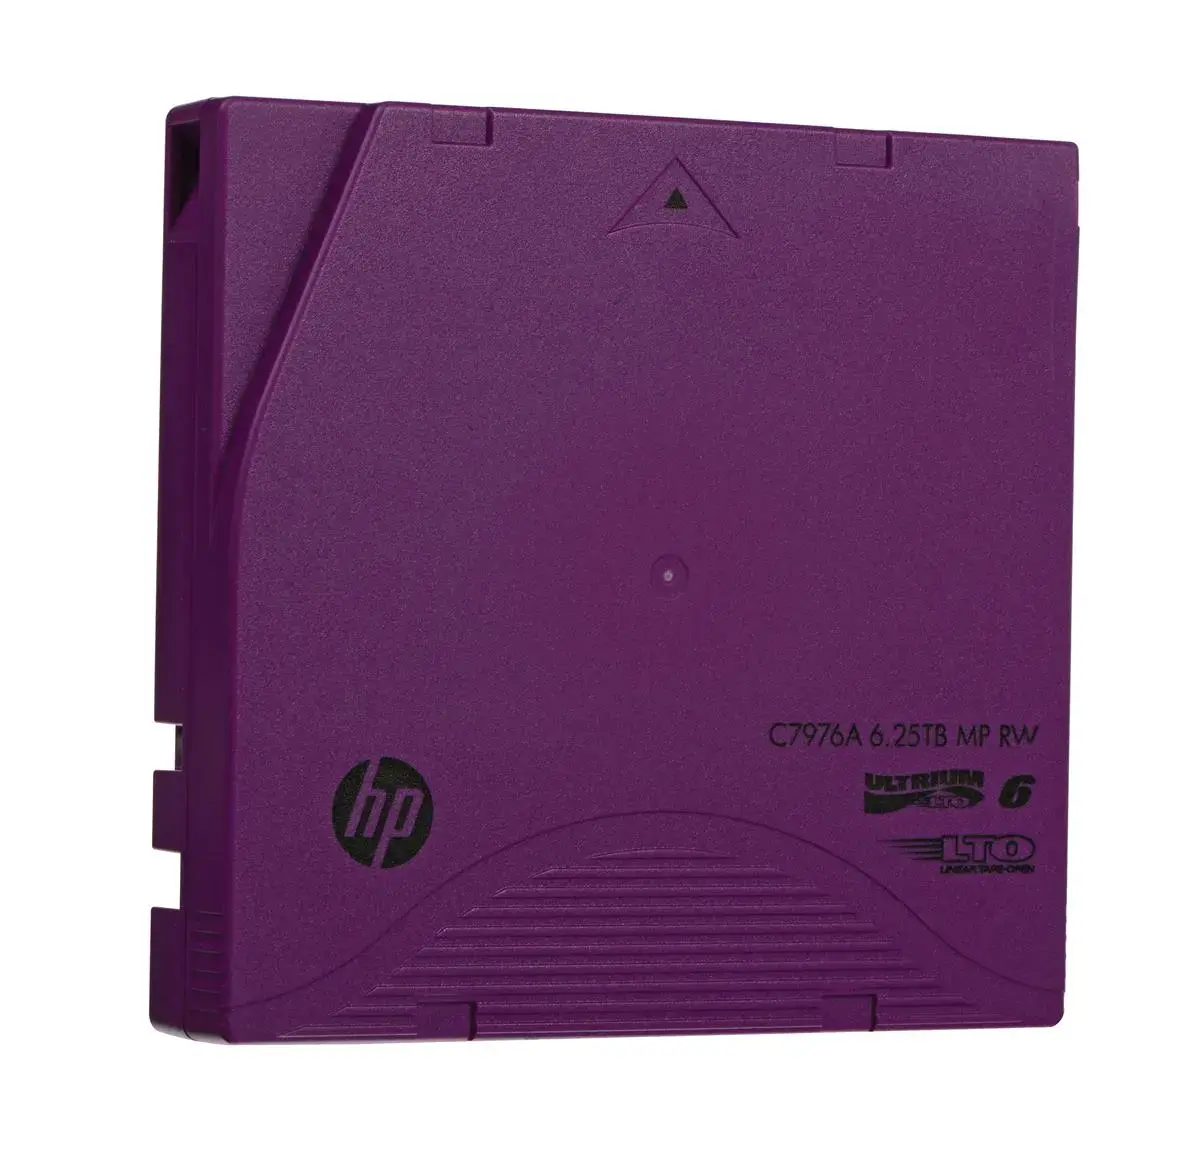 C7976AC HP LTO-6 Ultrium-2.50TB/6.25TB MP RW Tape DATa Cartridge